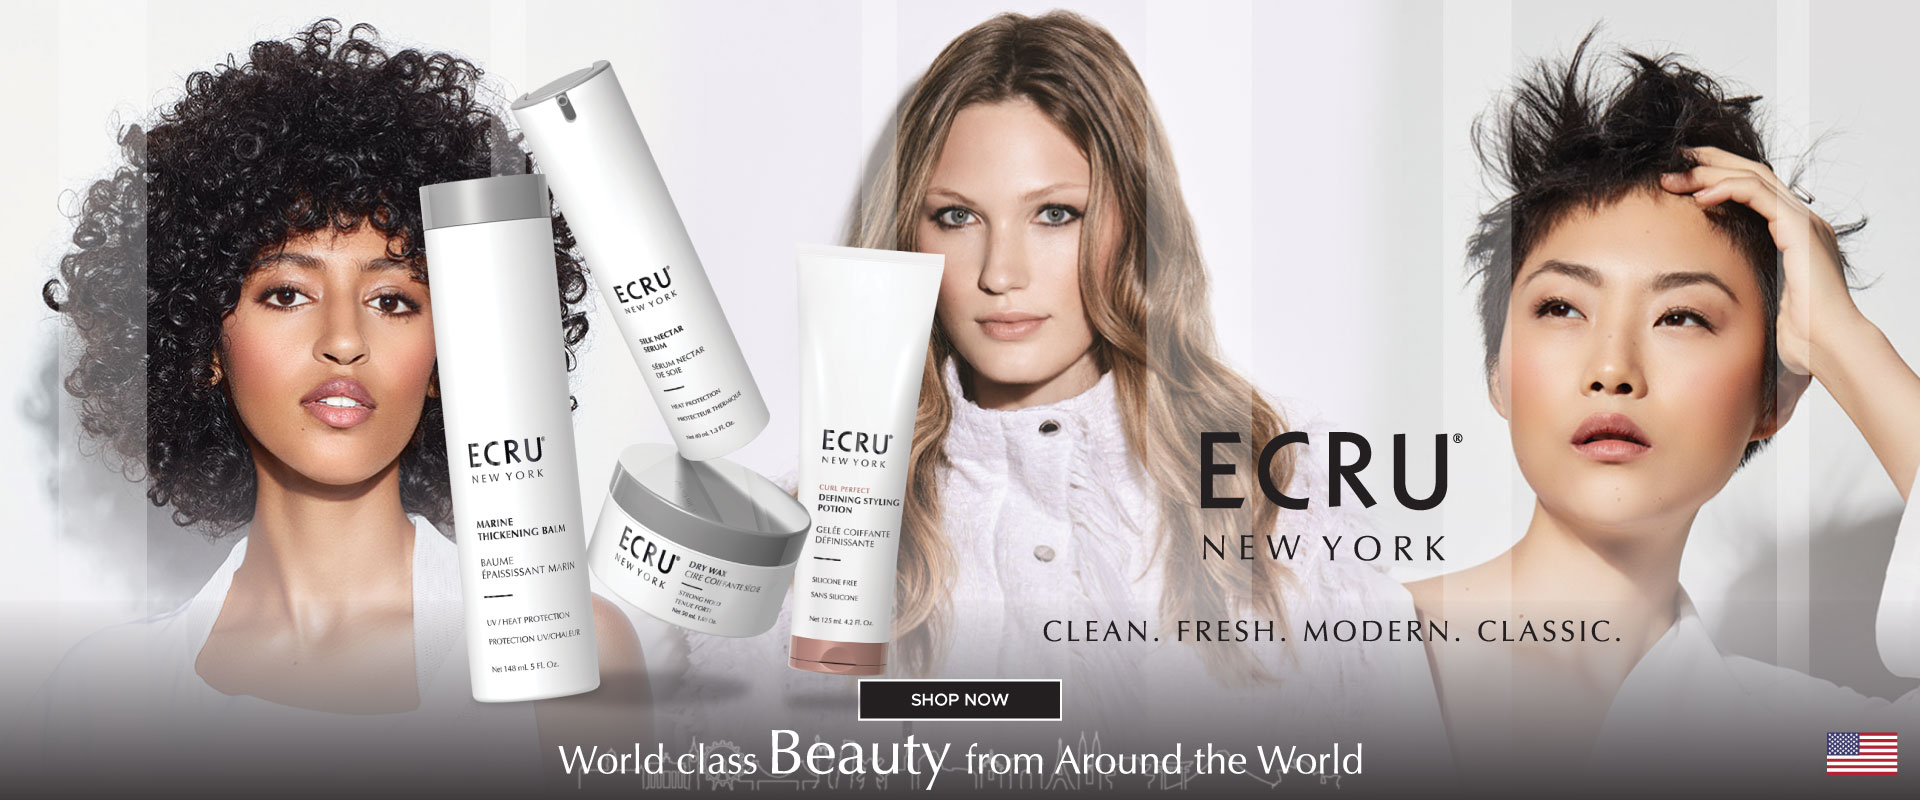 [World Class Beauty] ECRU New York